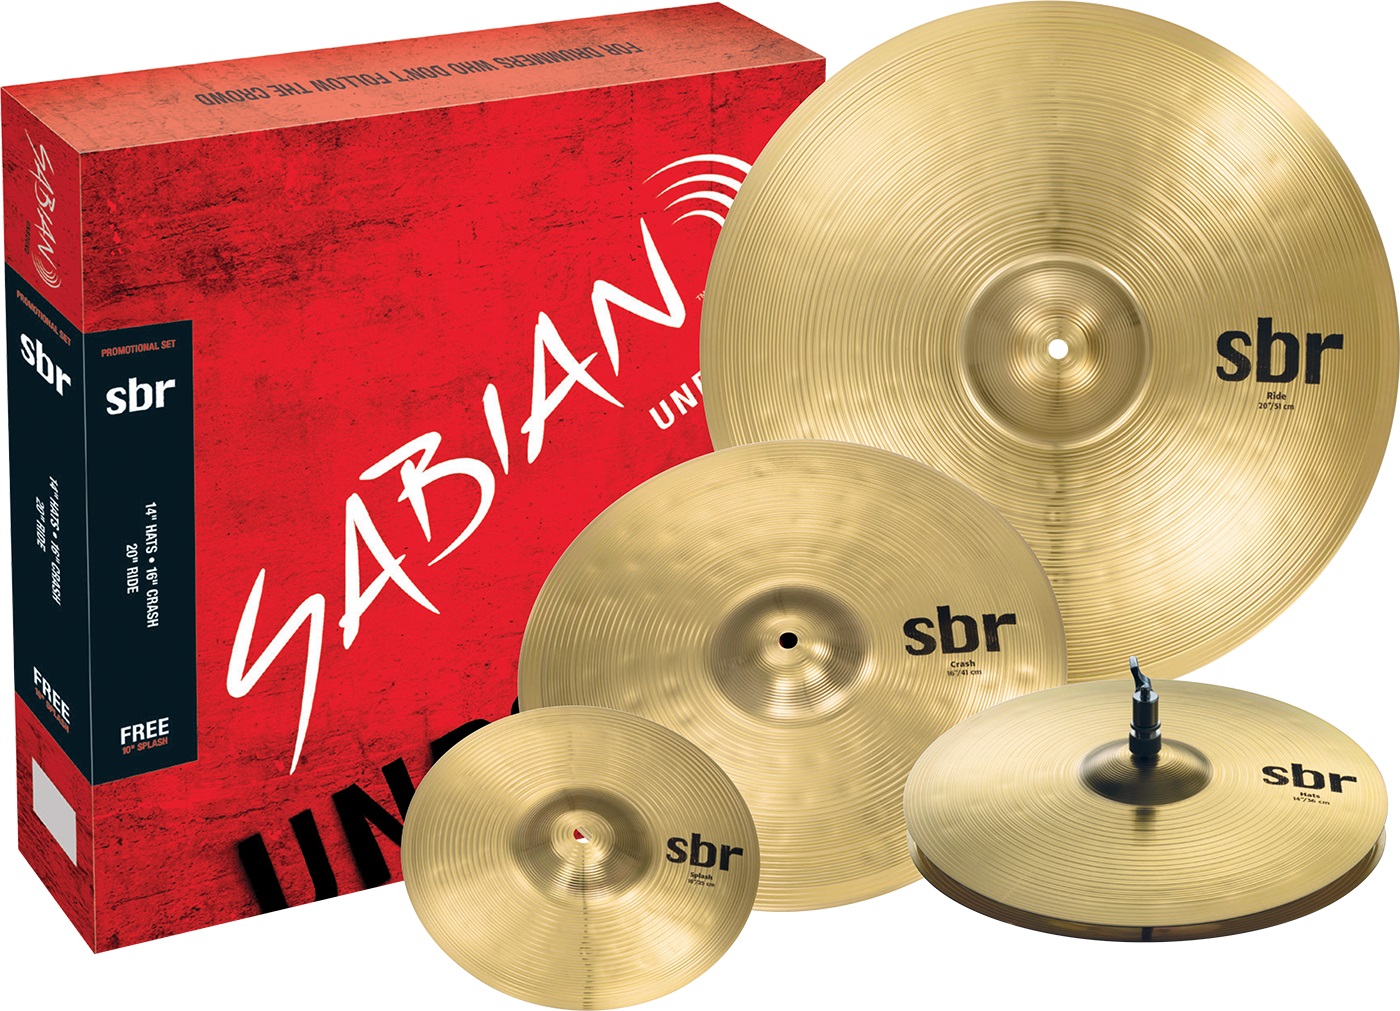 Тарелки, барабаны для ударных установок Sabian SBr Promotional Pack тарелки барабаны для ударных установок sabian 18 aax thin crash